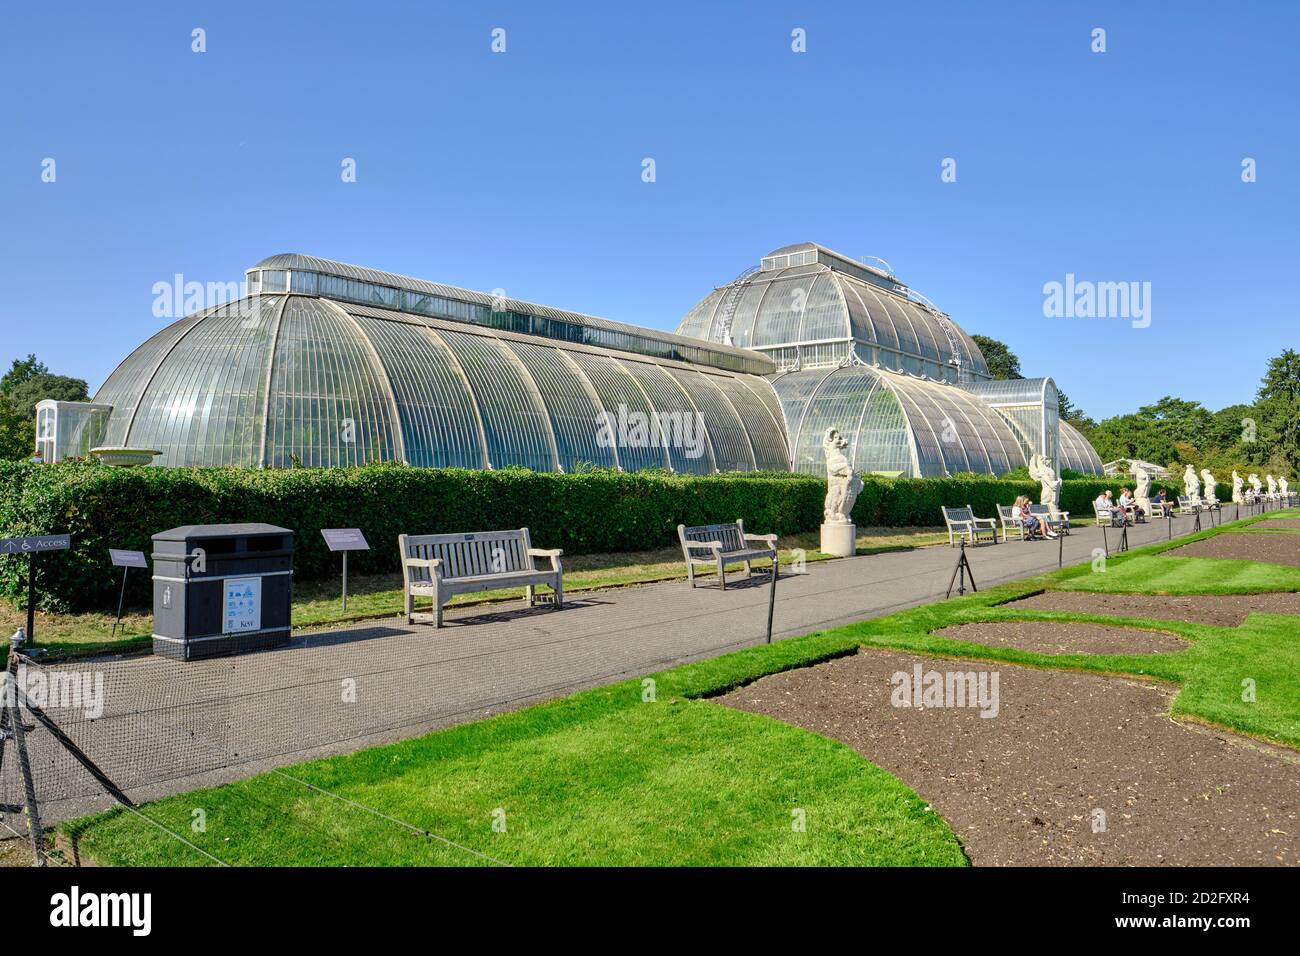 Vue en perspective de la Palm House dans les jardins botaniques royaux, Kew à Richmond sur la Tamise, dans un ciel bleu clair. Banque D'Images